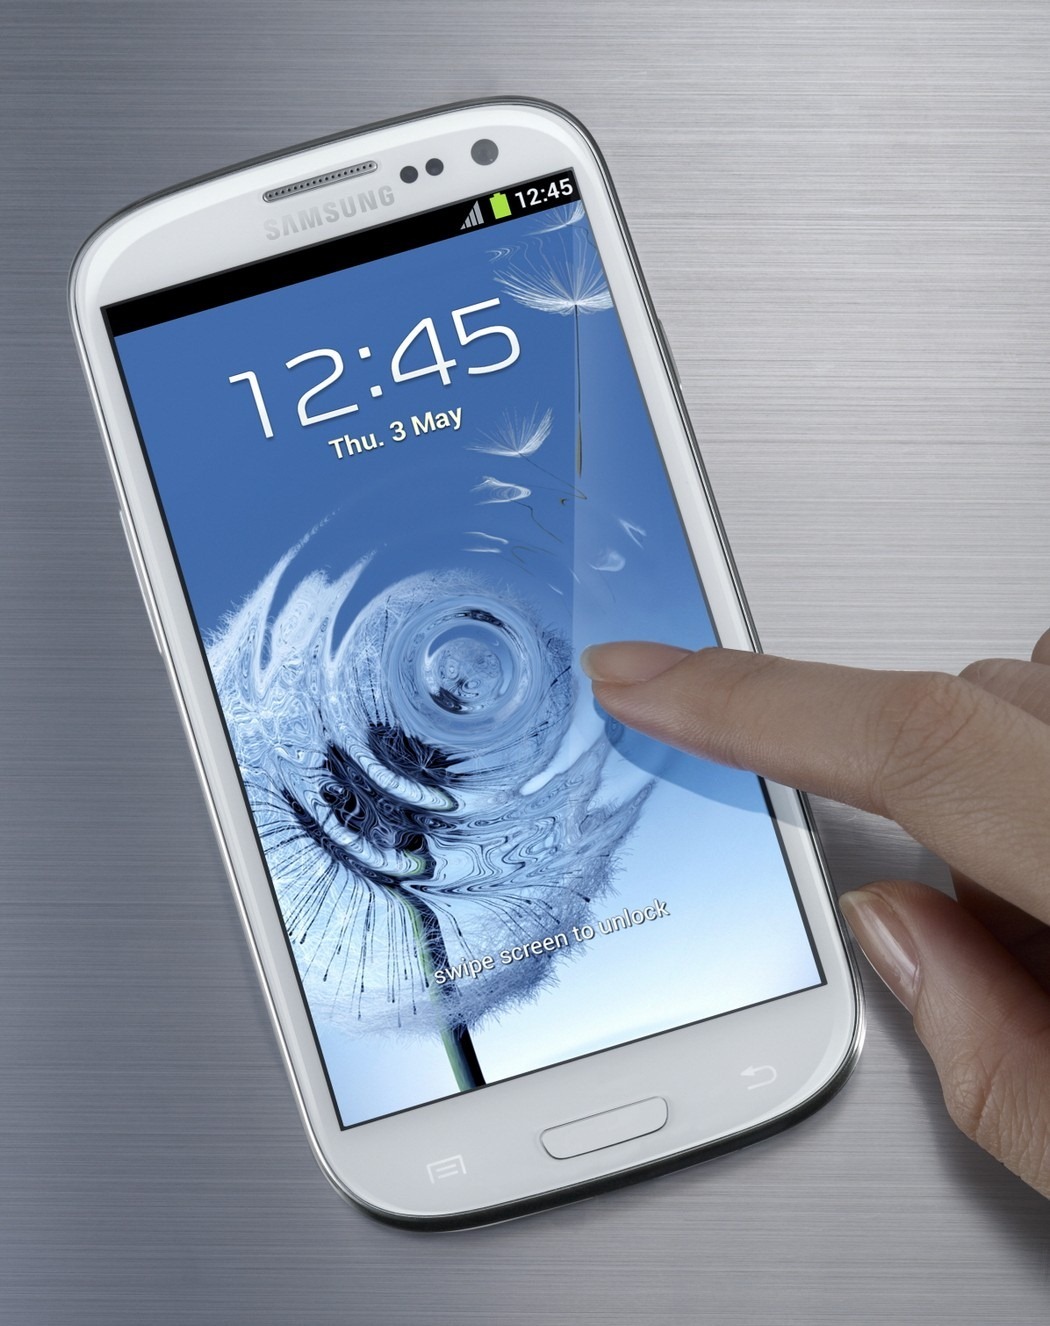 Samsung Galaxy S III, ¿en que precio llegará?